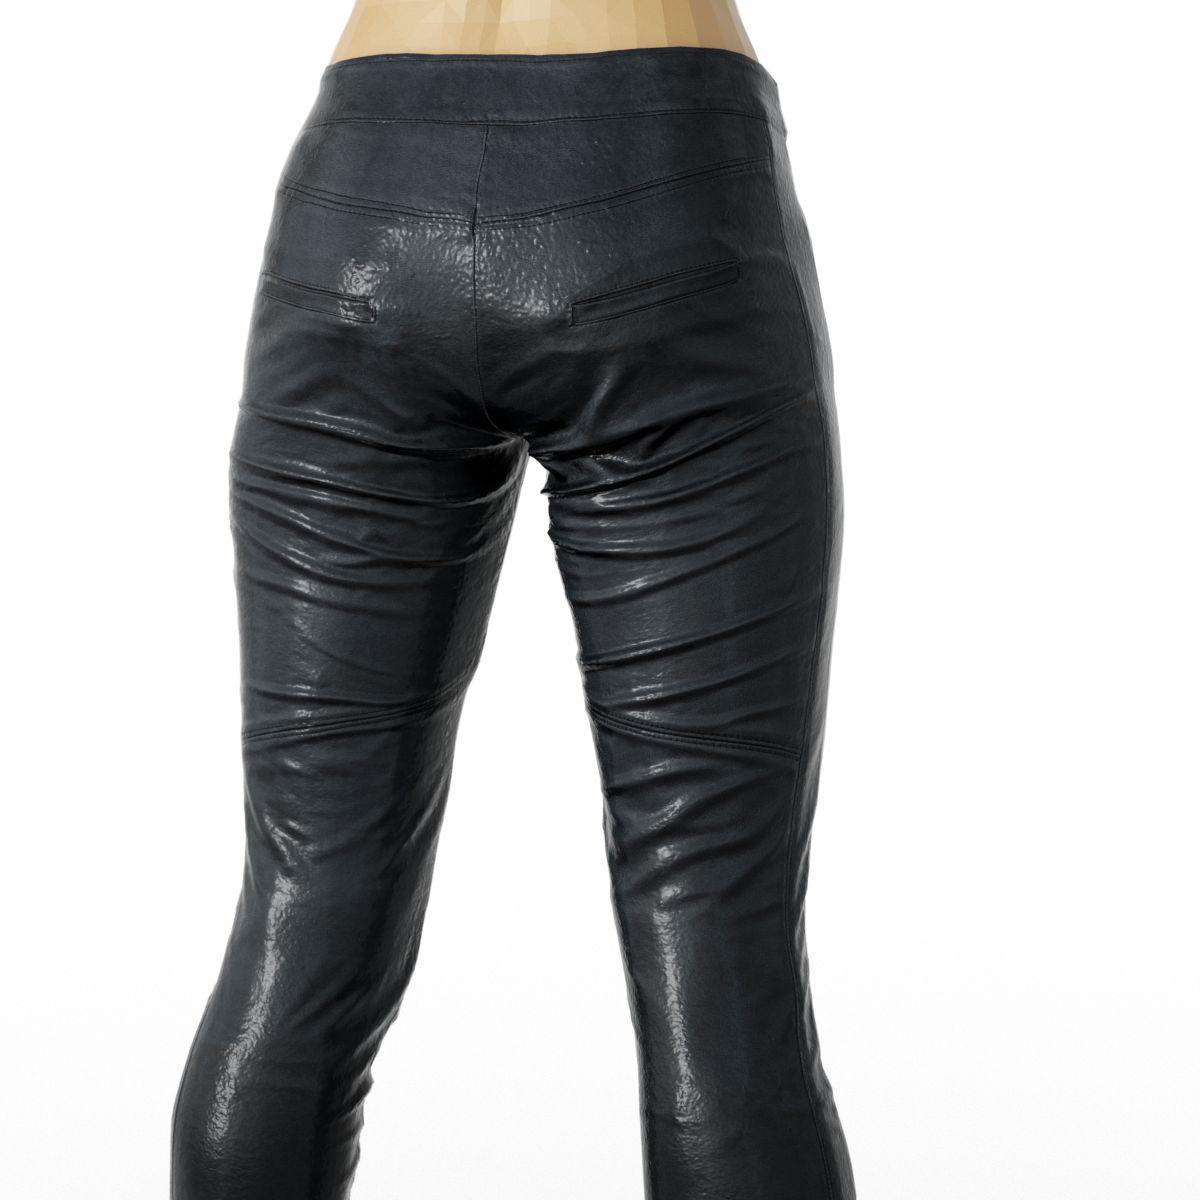 OBJ - Shiny Leather Pants | Daz 3D